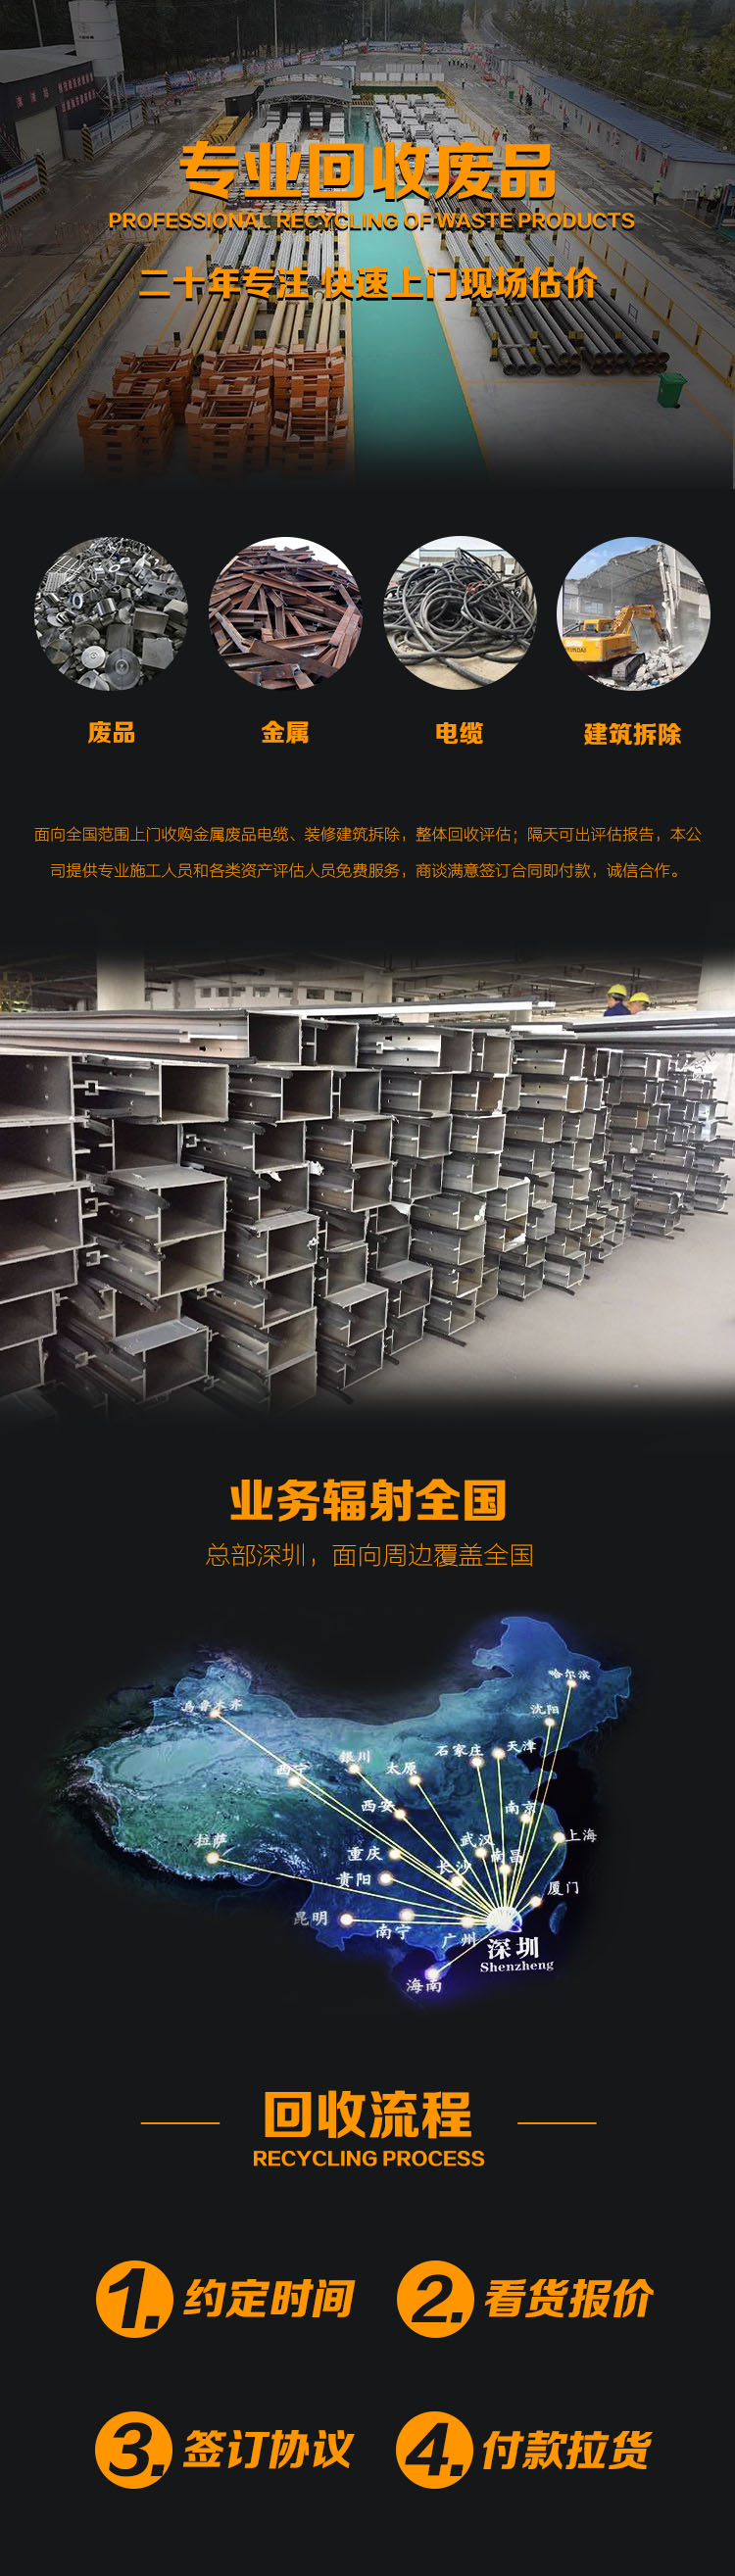 惠州回收电缆 工厂工地费旧电缆线回收拆除